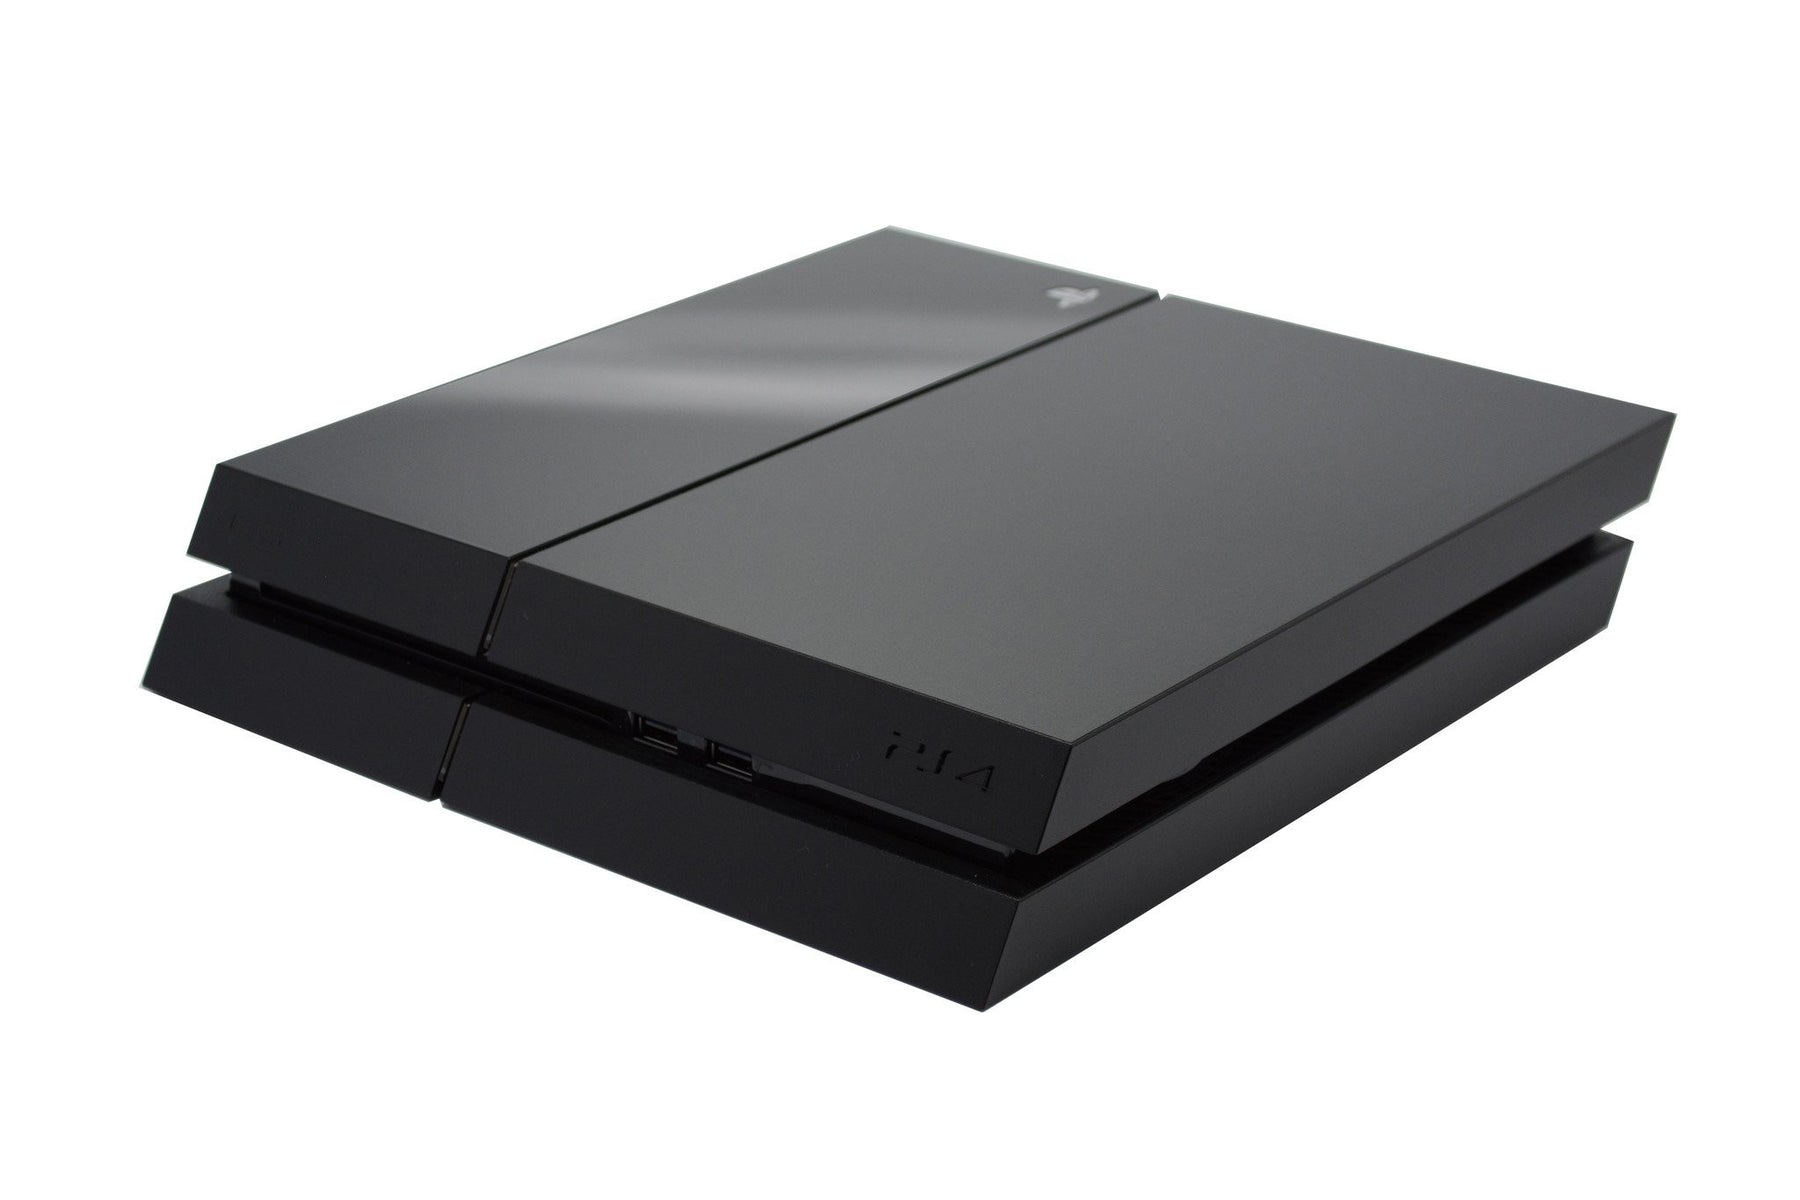 Playstation 4 Ps4 Black Matt Skin Cover Easyskinz